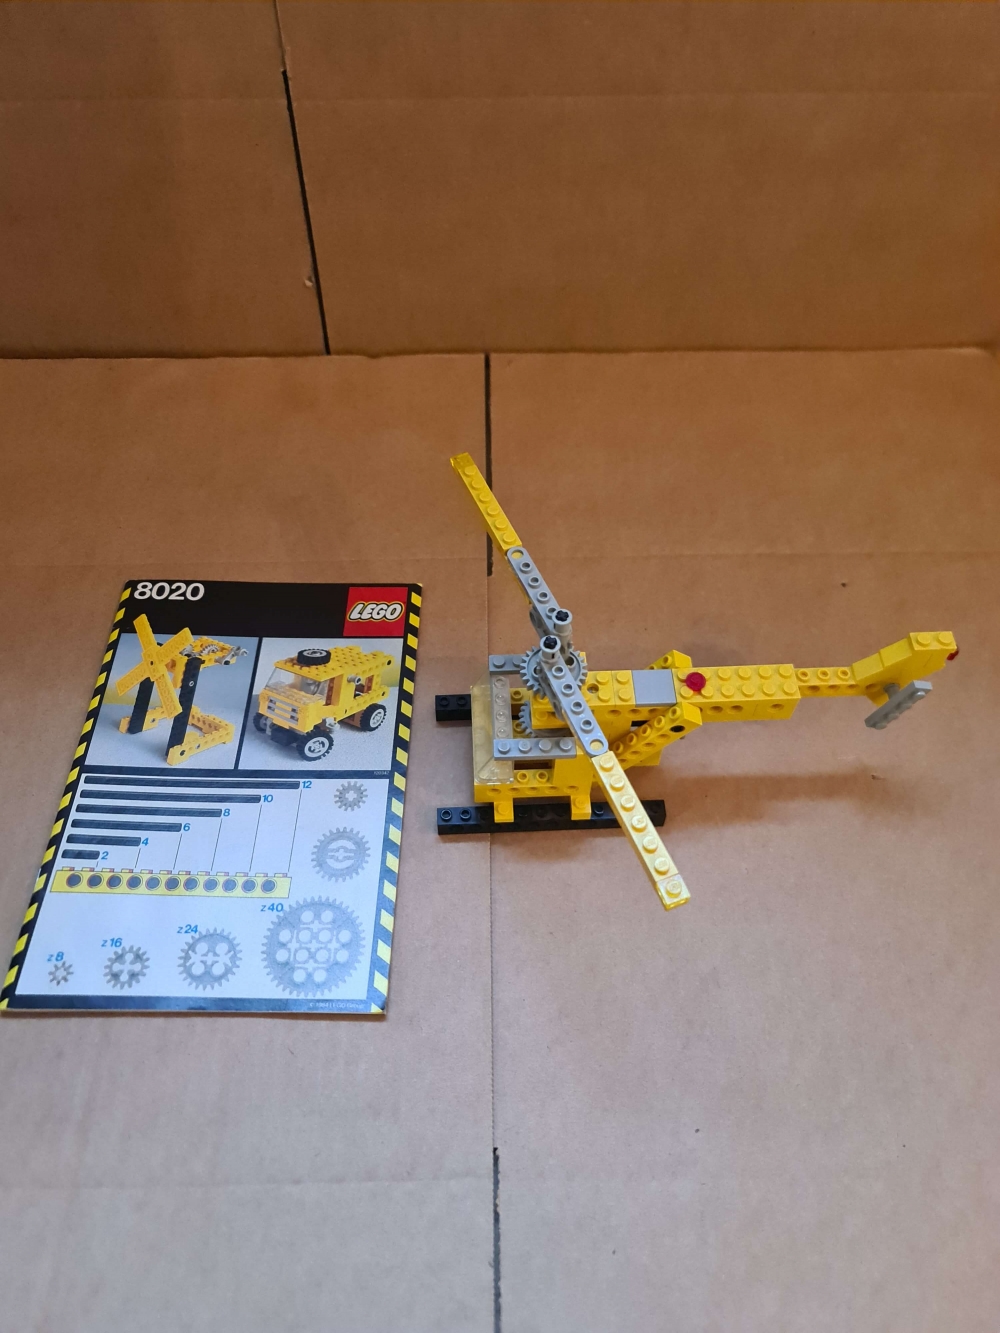 Sett 8020 fra Lego Technic serien. 

Komplett med manual og alle ekstra deler som trengs for alternative modeller. 
Gammelt sett så noe bruksmerker vil forekomme.